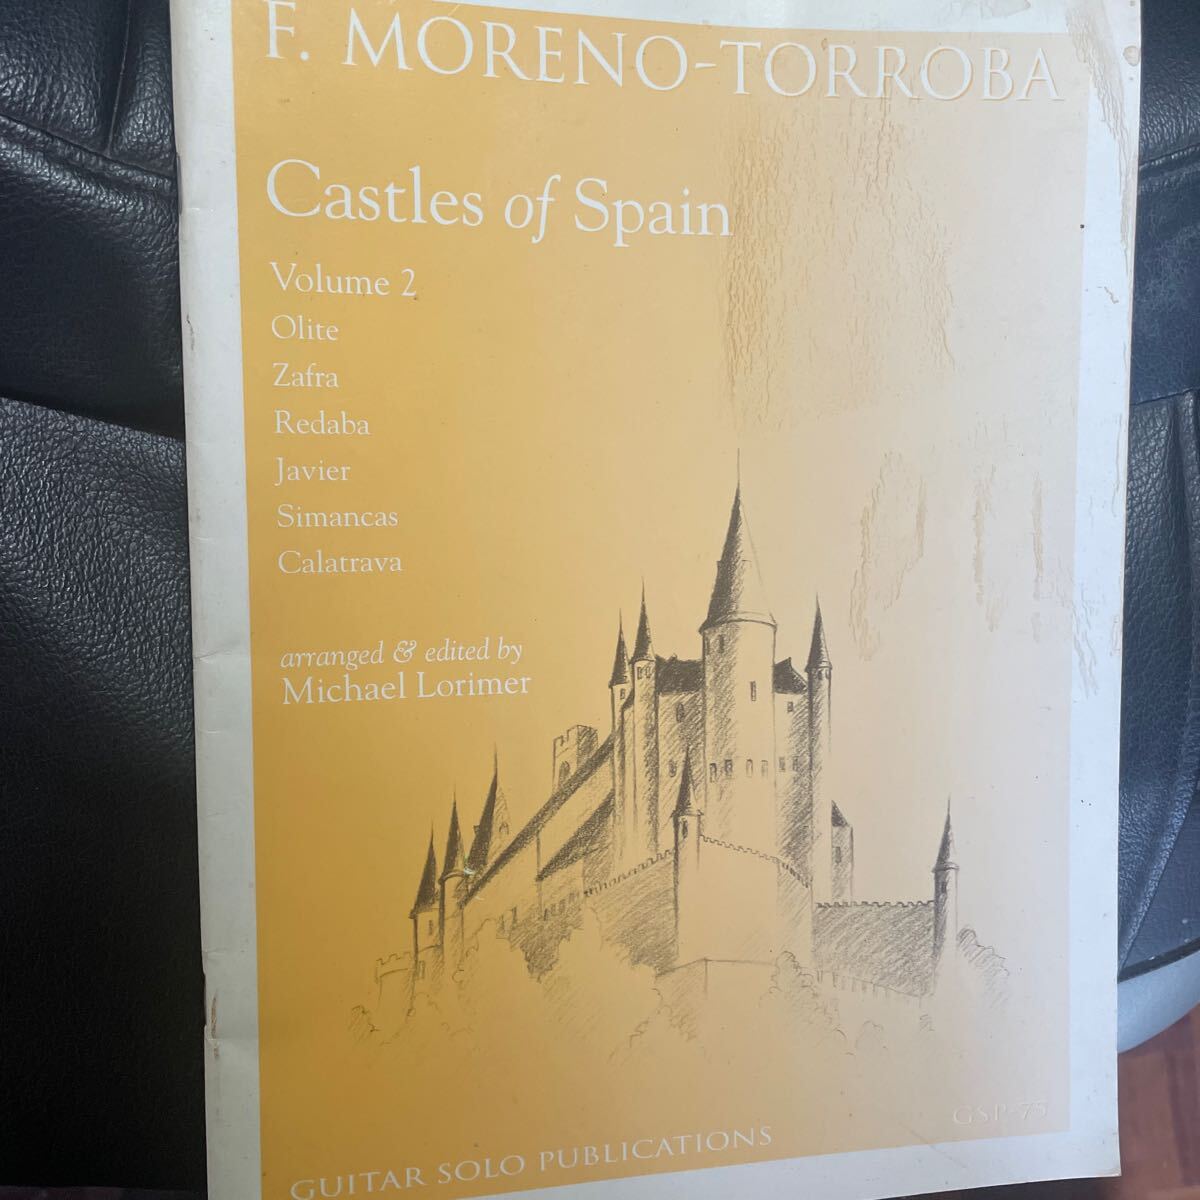 スペインの城　F.moreno-torroba モレノ・トローバ　castle of Spain セゴビア　クラシックギター　スペイン音楽_画像1